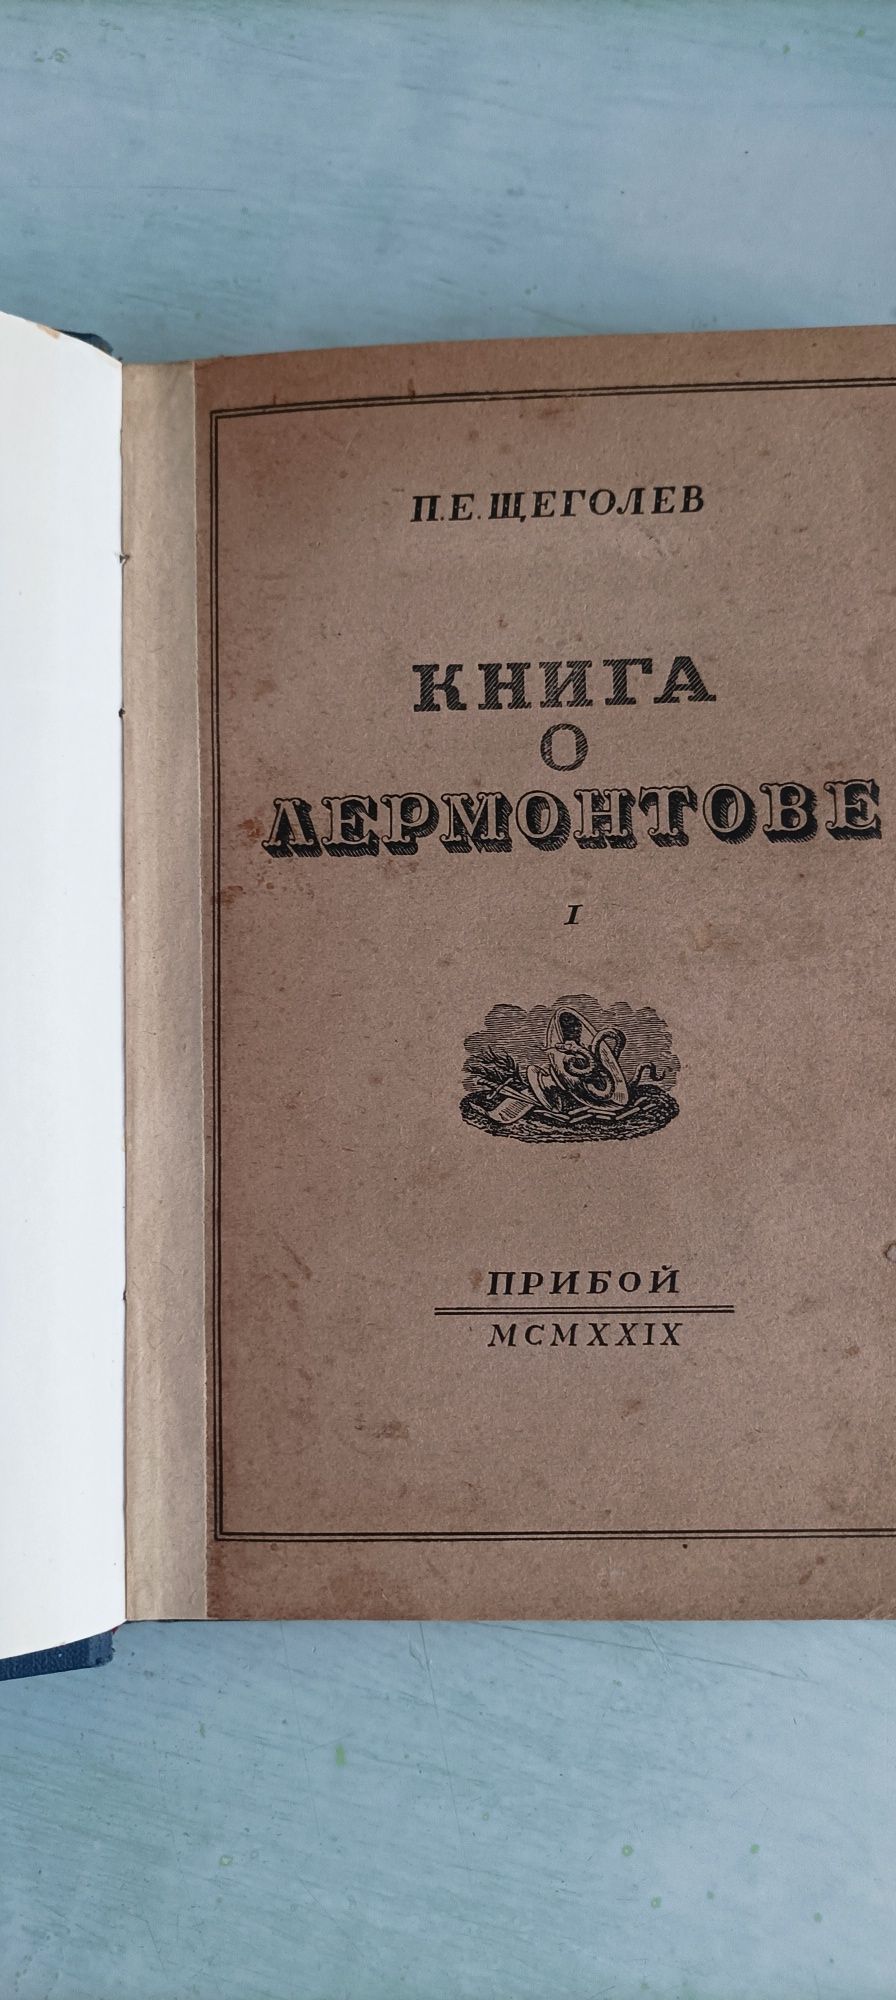 Книга о М. Ю. Лермонтове в 2 томах. 1929 год